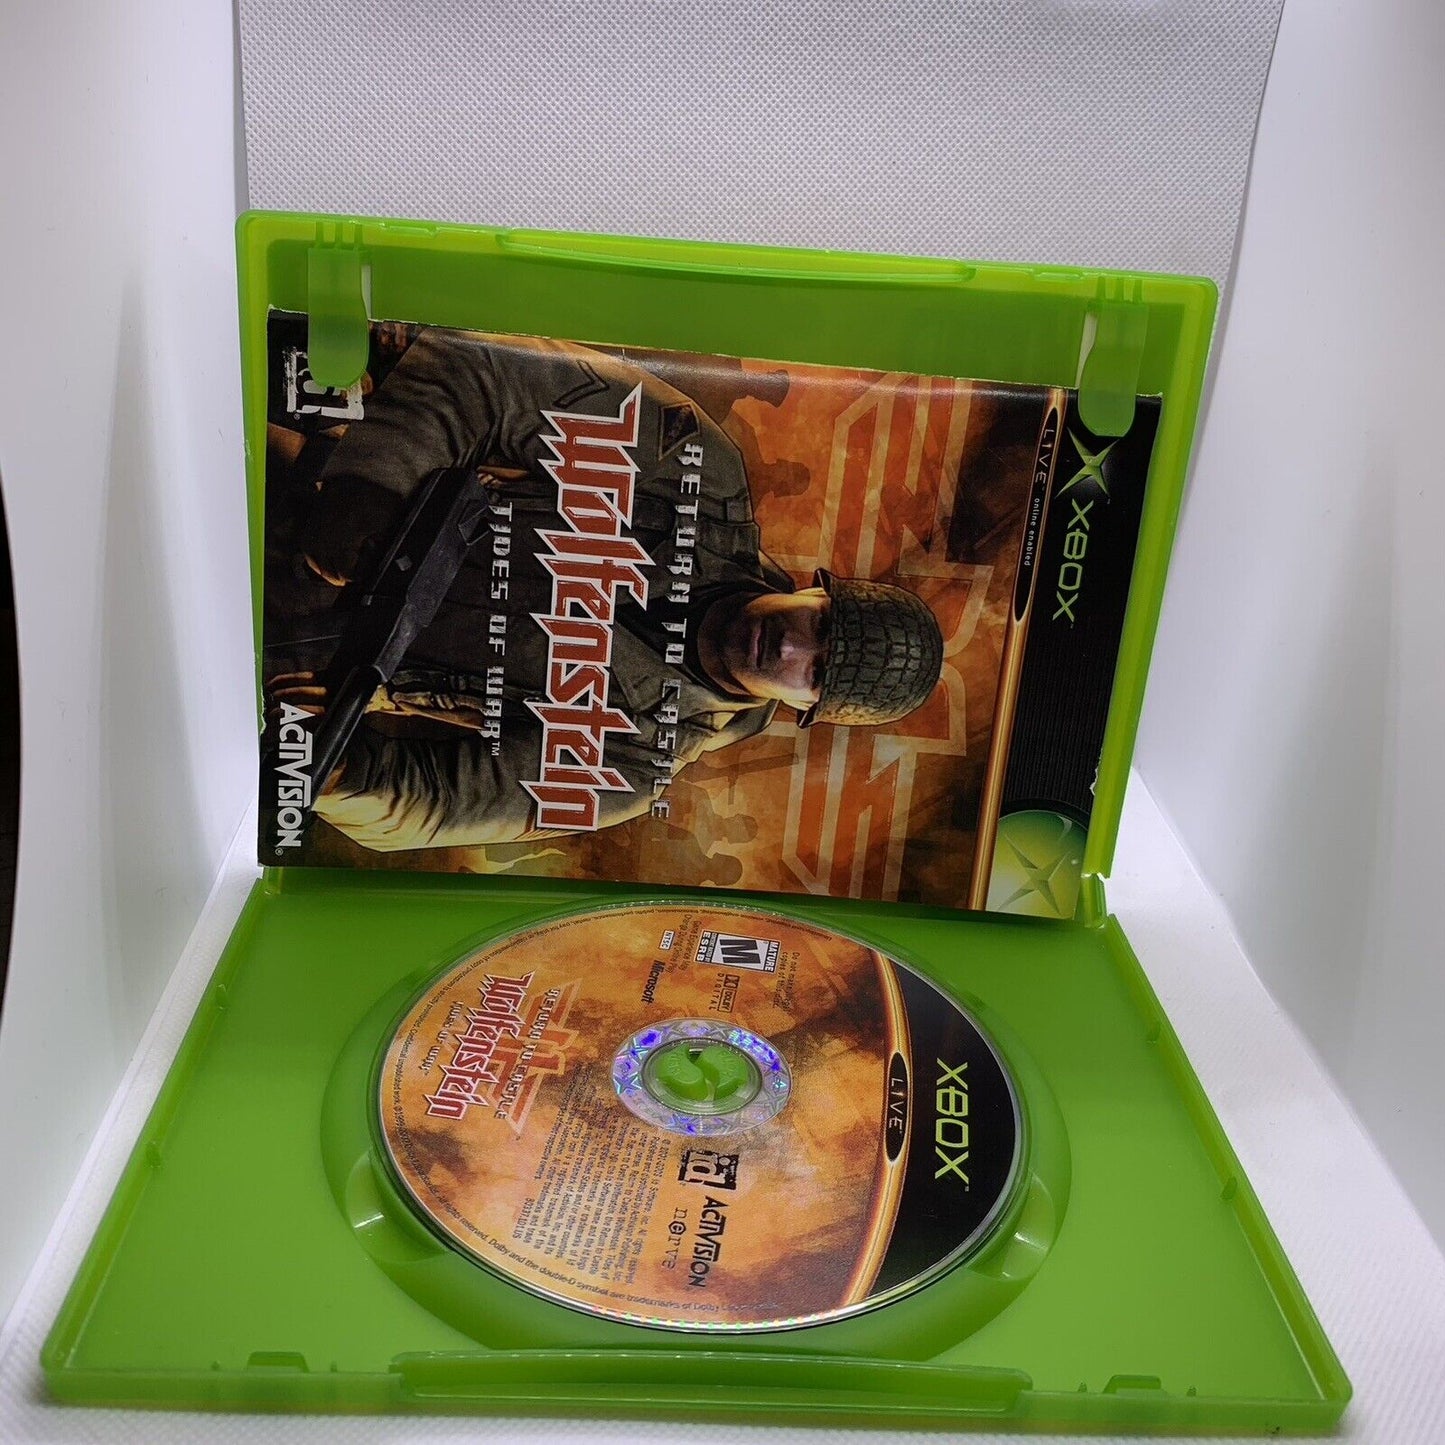 Return To Castle Wolfenstein Tides of War Xbox Complete